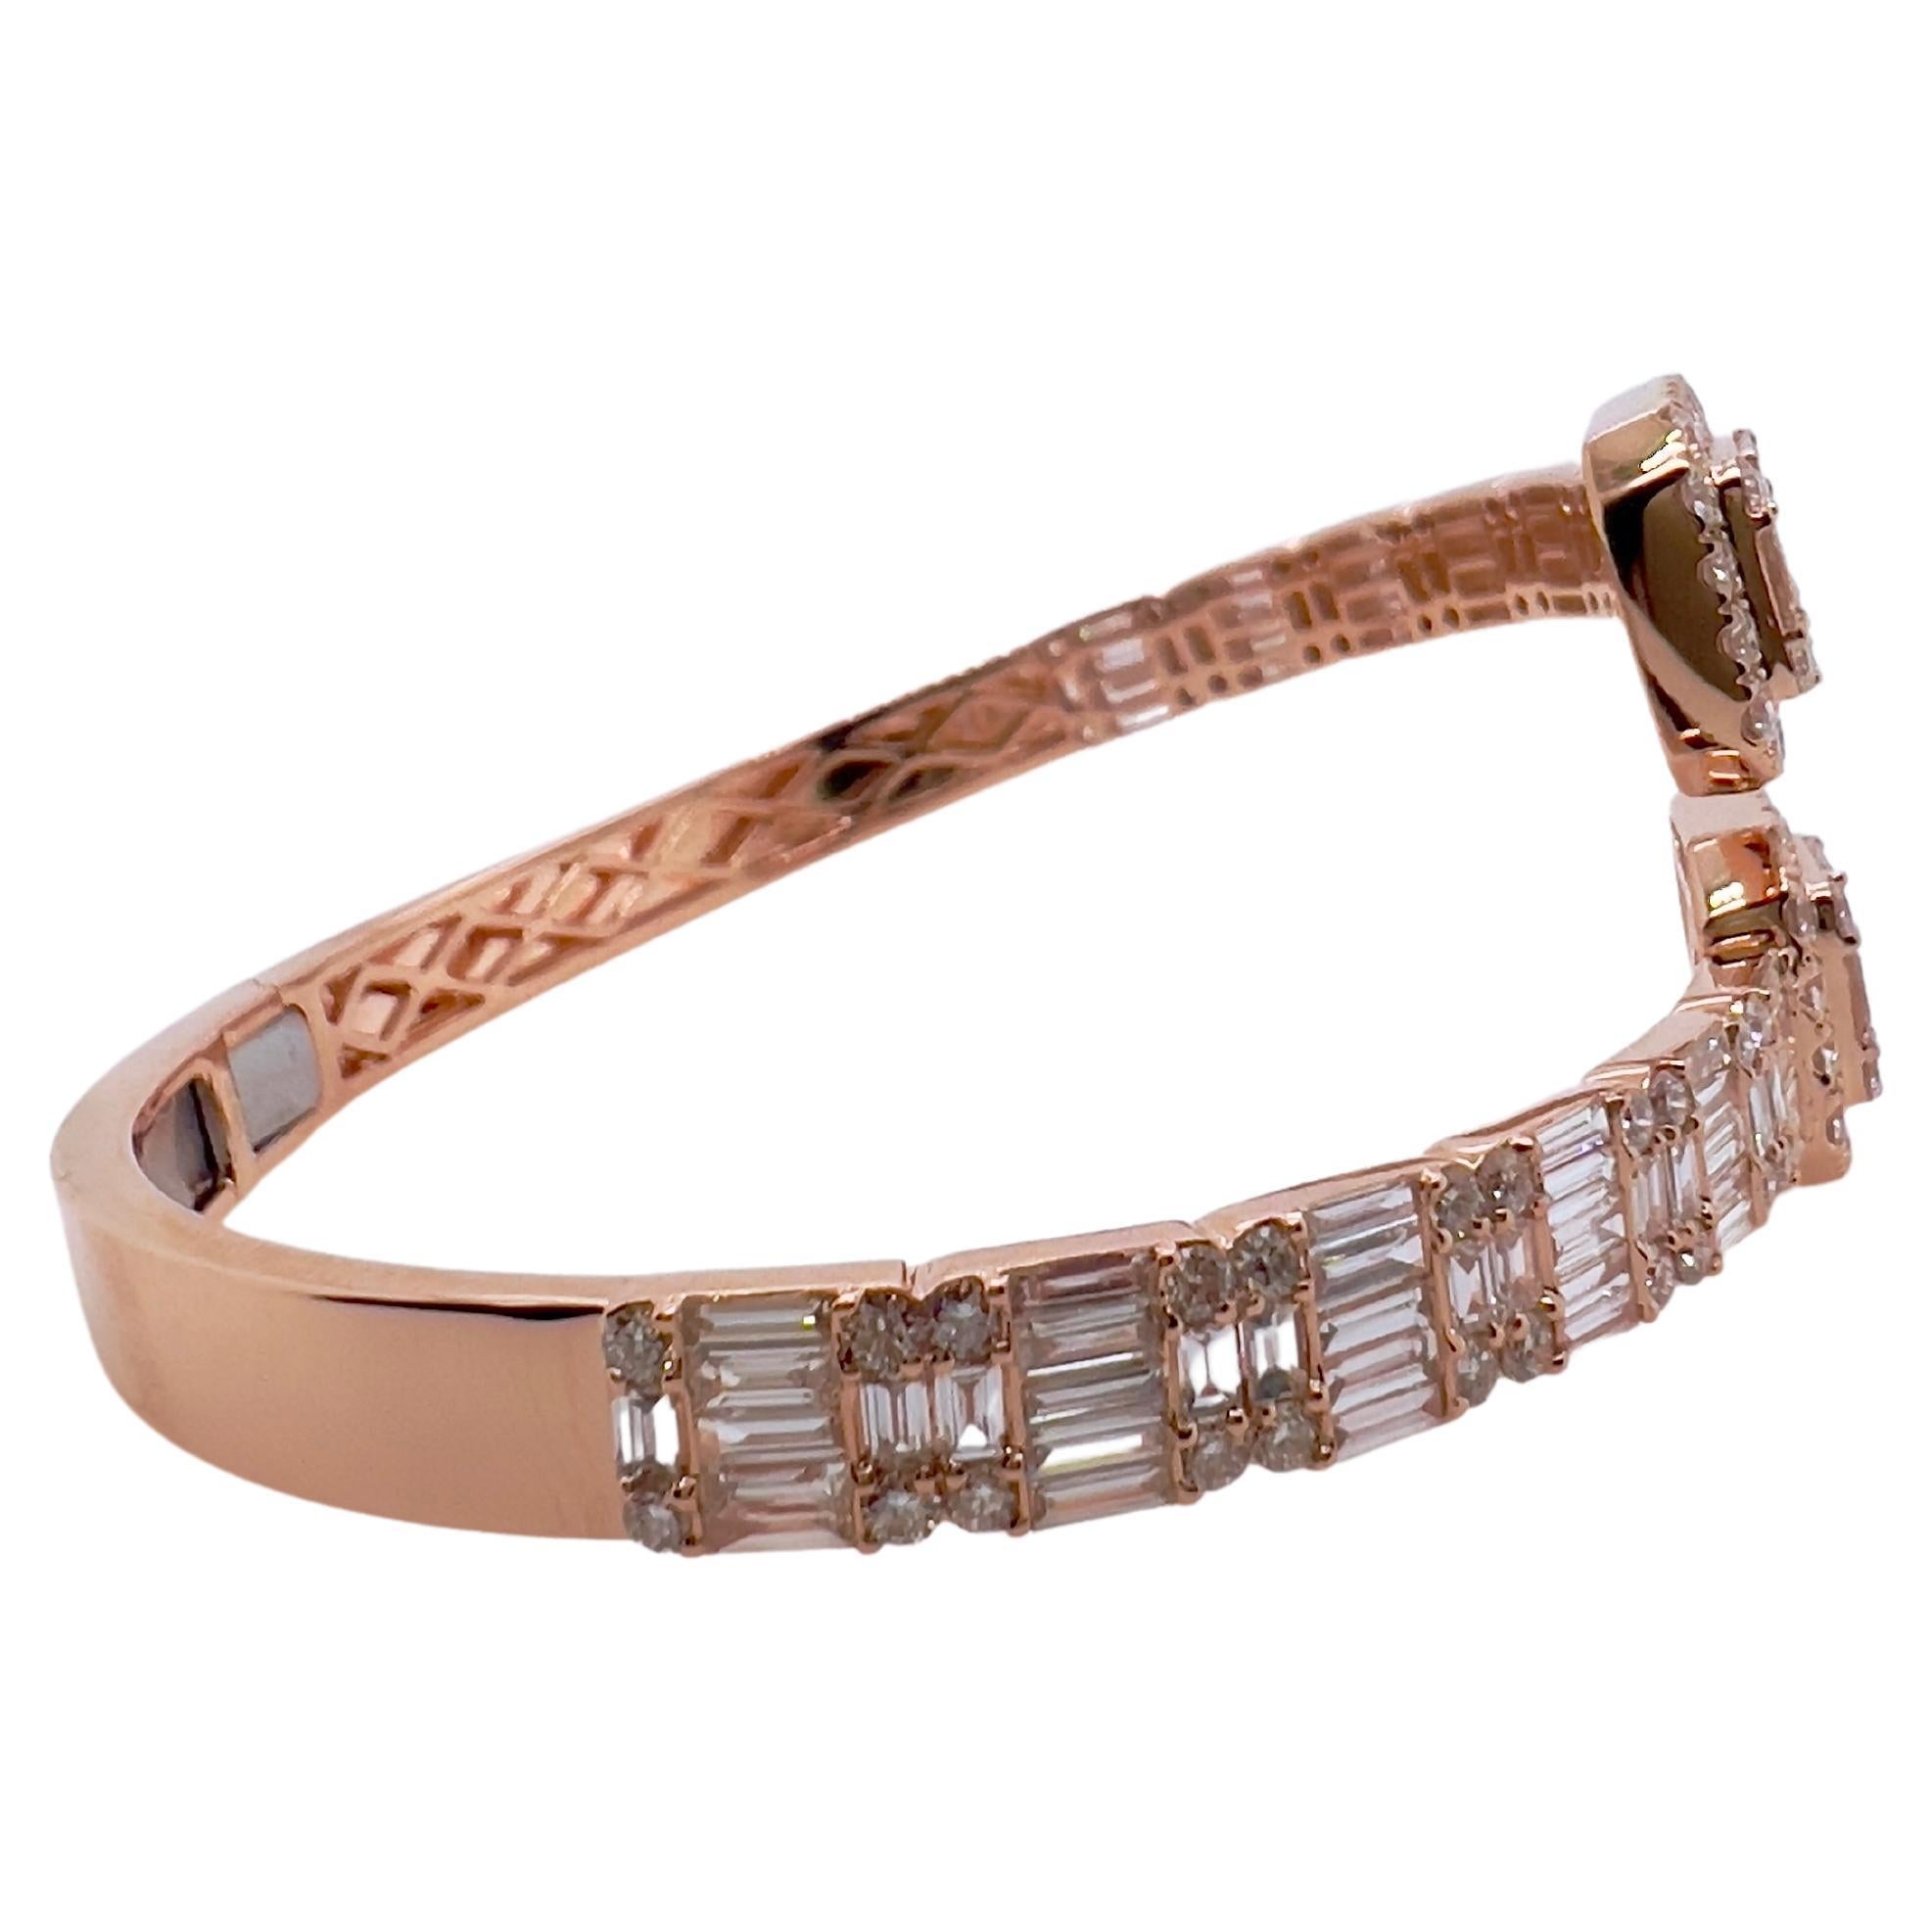 Ce magnifique bracelet en diamant attirera à coup sûr l'attention de tous.  Le style bypass permet un accès facile à l'ouverture et à la fermeture tout en offrant un design contemporain qui rendra votre poignet glamour !  

Les diamants :  5.99 cts,